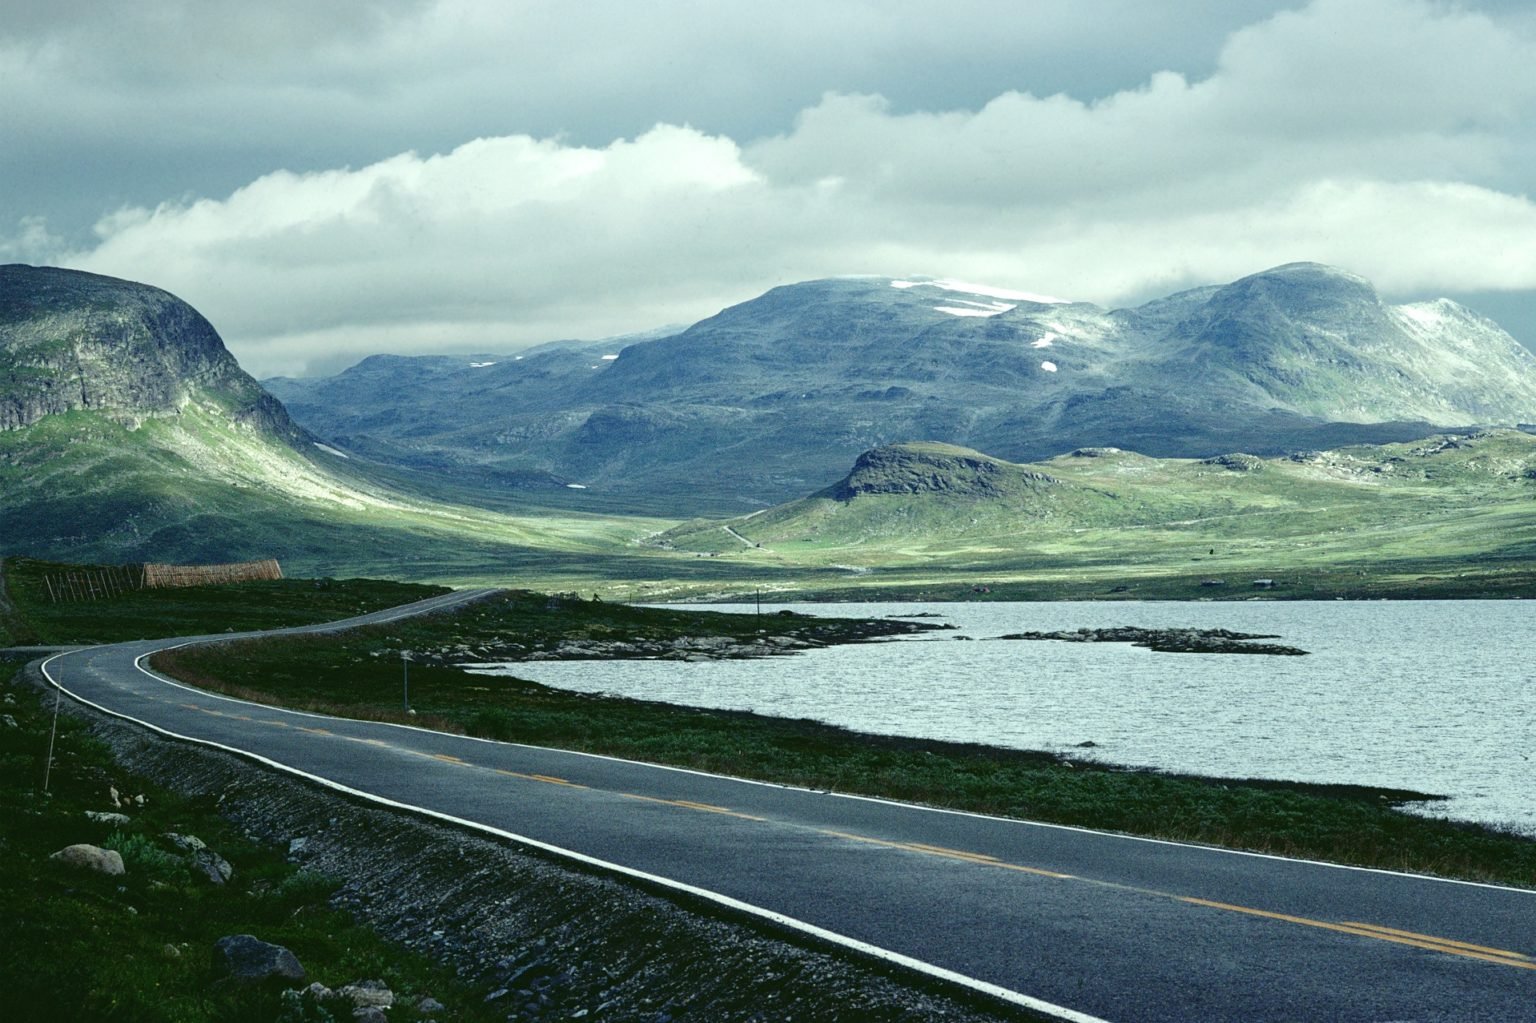 Road through landscape